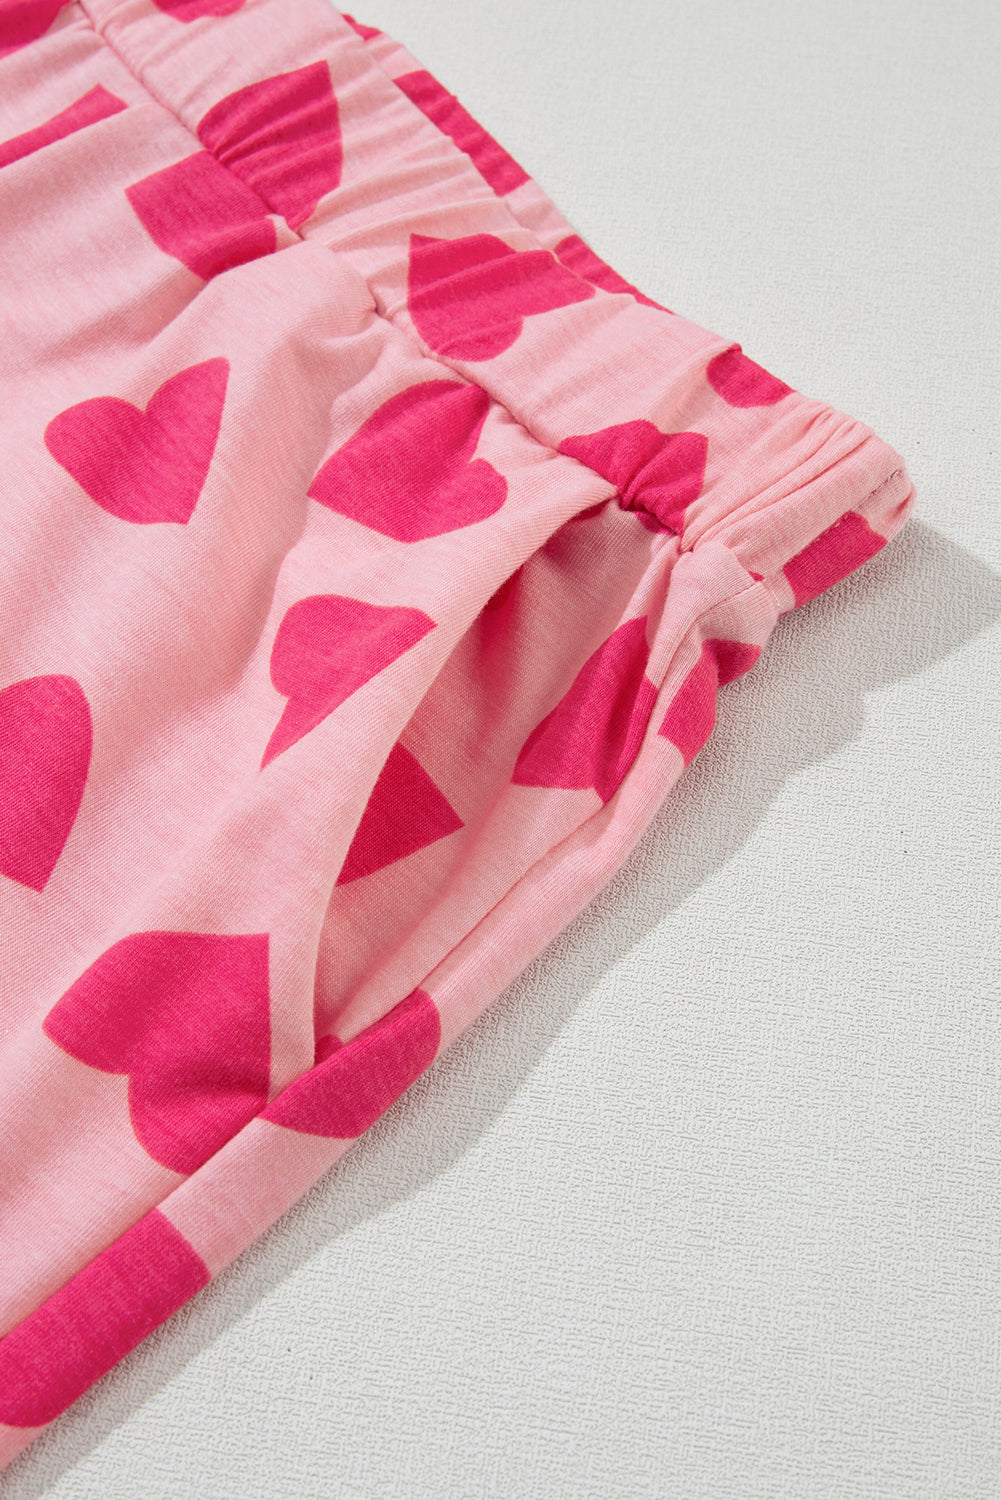 Rožnata majica s kratkimi rokavi z dolgimi rokavi in ​​potiskom v obliki srca za Valentinovo